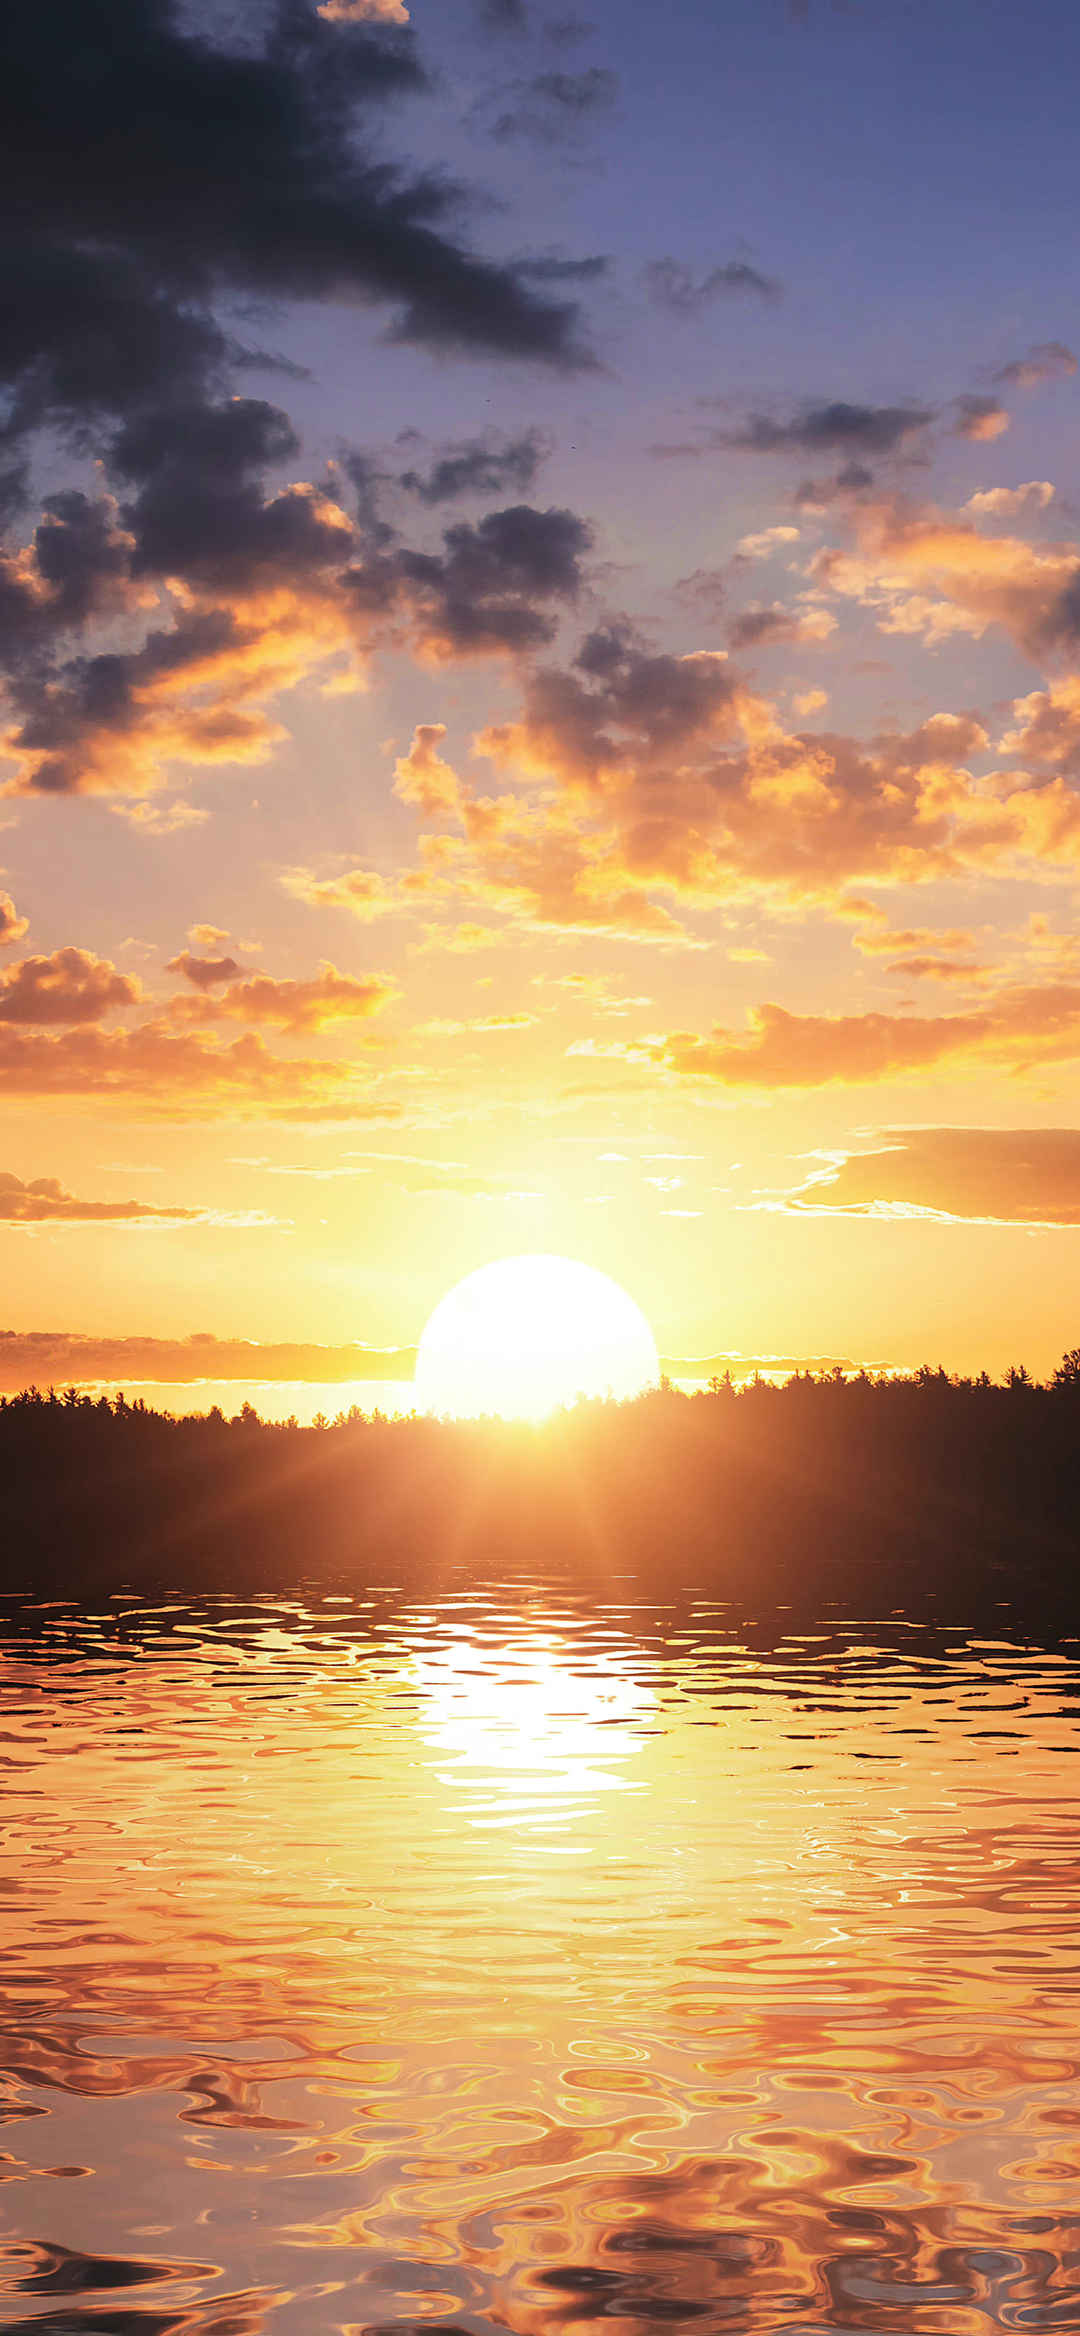 夕阳照射在树林湖泊上暖心壁纸